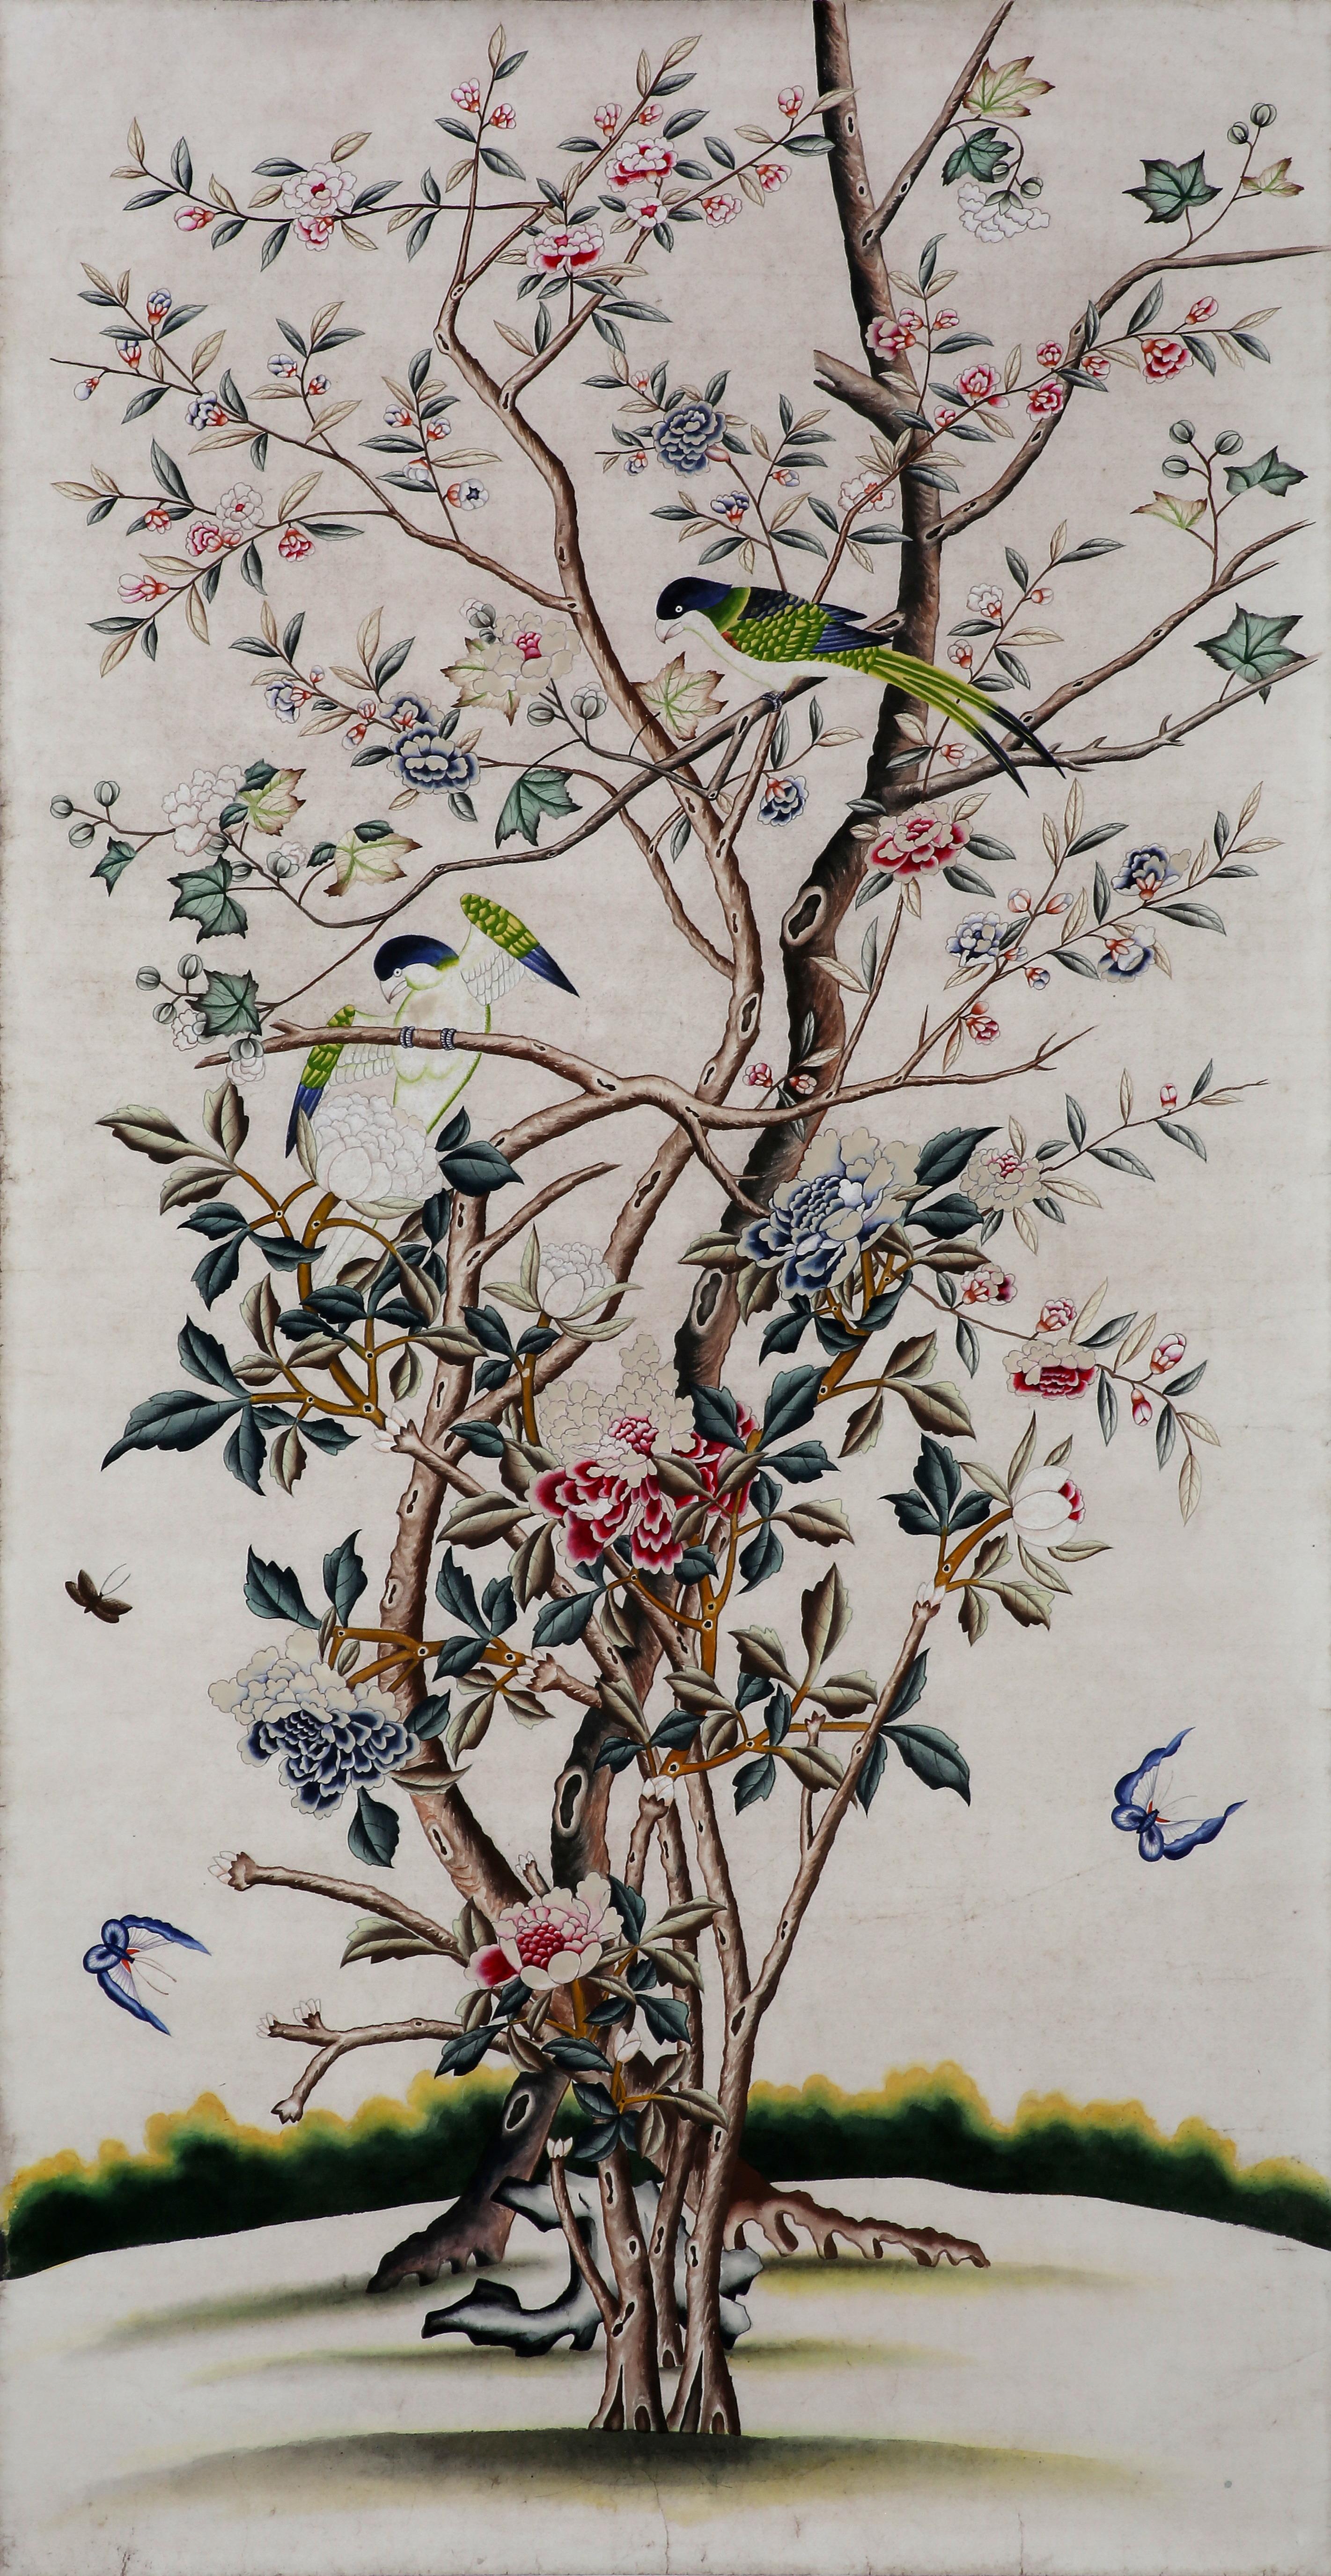 Paire de peintures originales inspirées des chinoiseries d'exportation du 19e siècle, représentant des motifs d'arbres, de fleurs et d'oiseaux sur du papier peint, à l'aquarelle sur papier de riz monté, provenant de notre studio. Un processus de